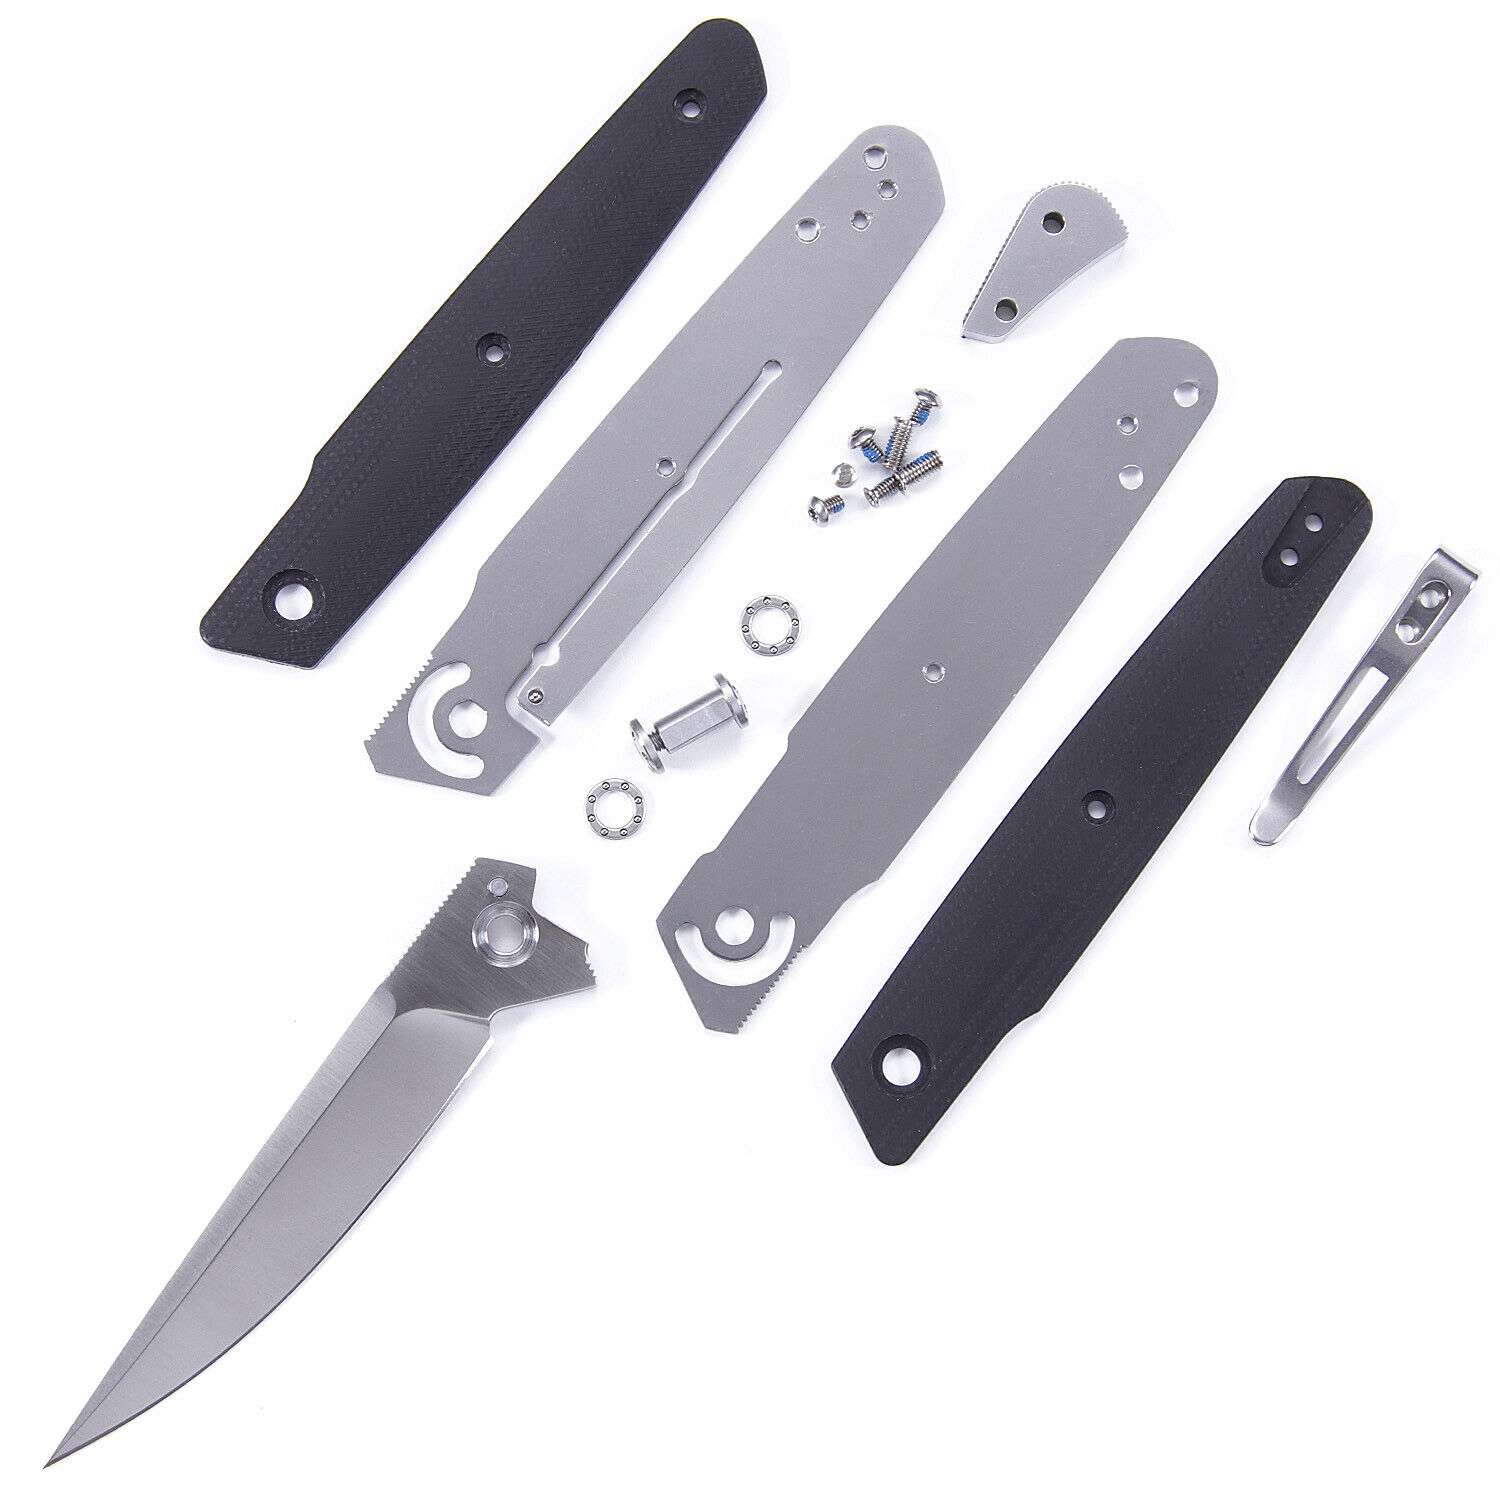 M63 - DIY Folding Knife Making Kit - USA Design